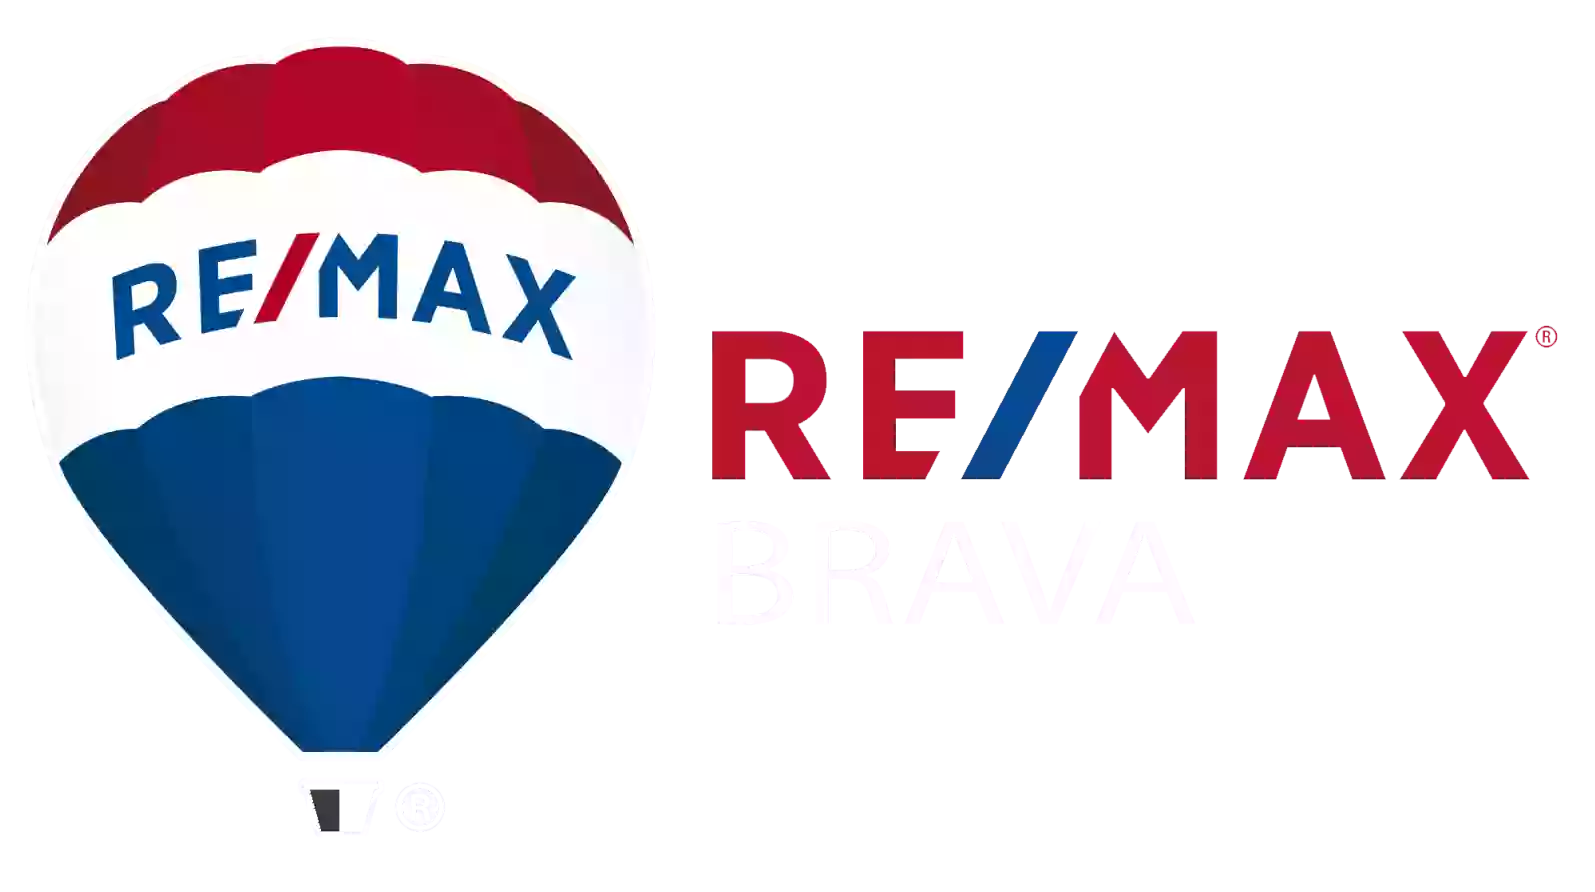 REMAX Brava G inmobiliaria en Girona - Venta I alquiler